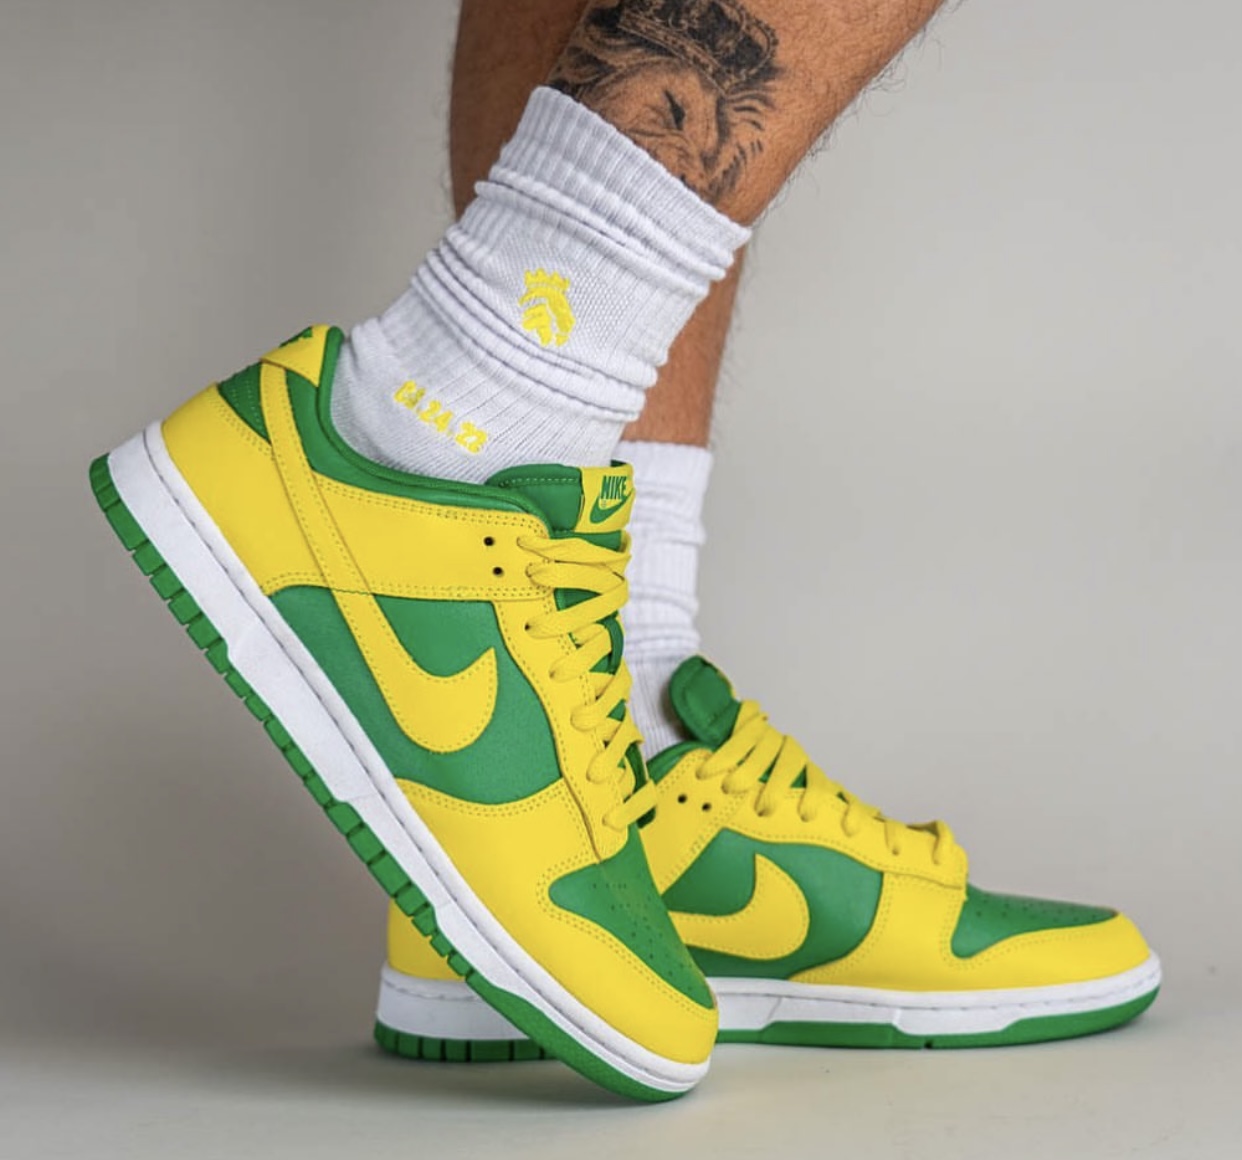 Nike Dunk Low Reverse Brazil DV0833 300 Release Date On Feet 2